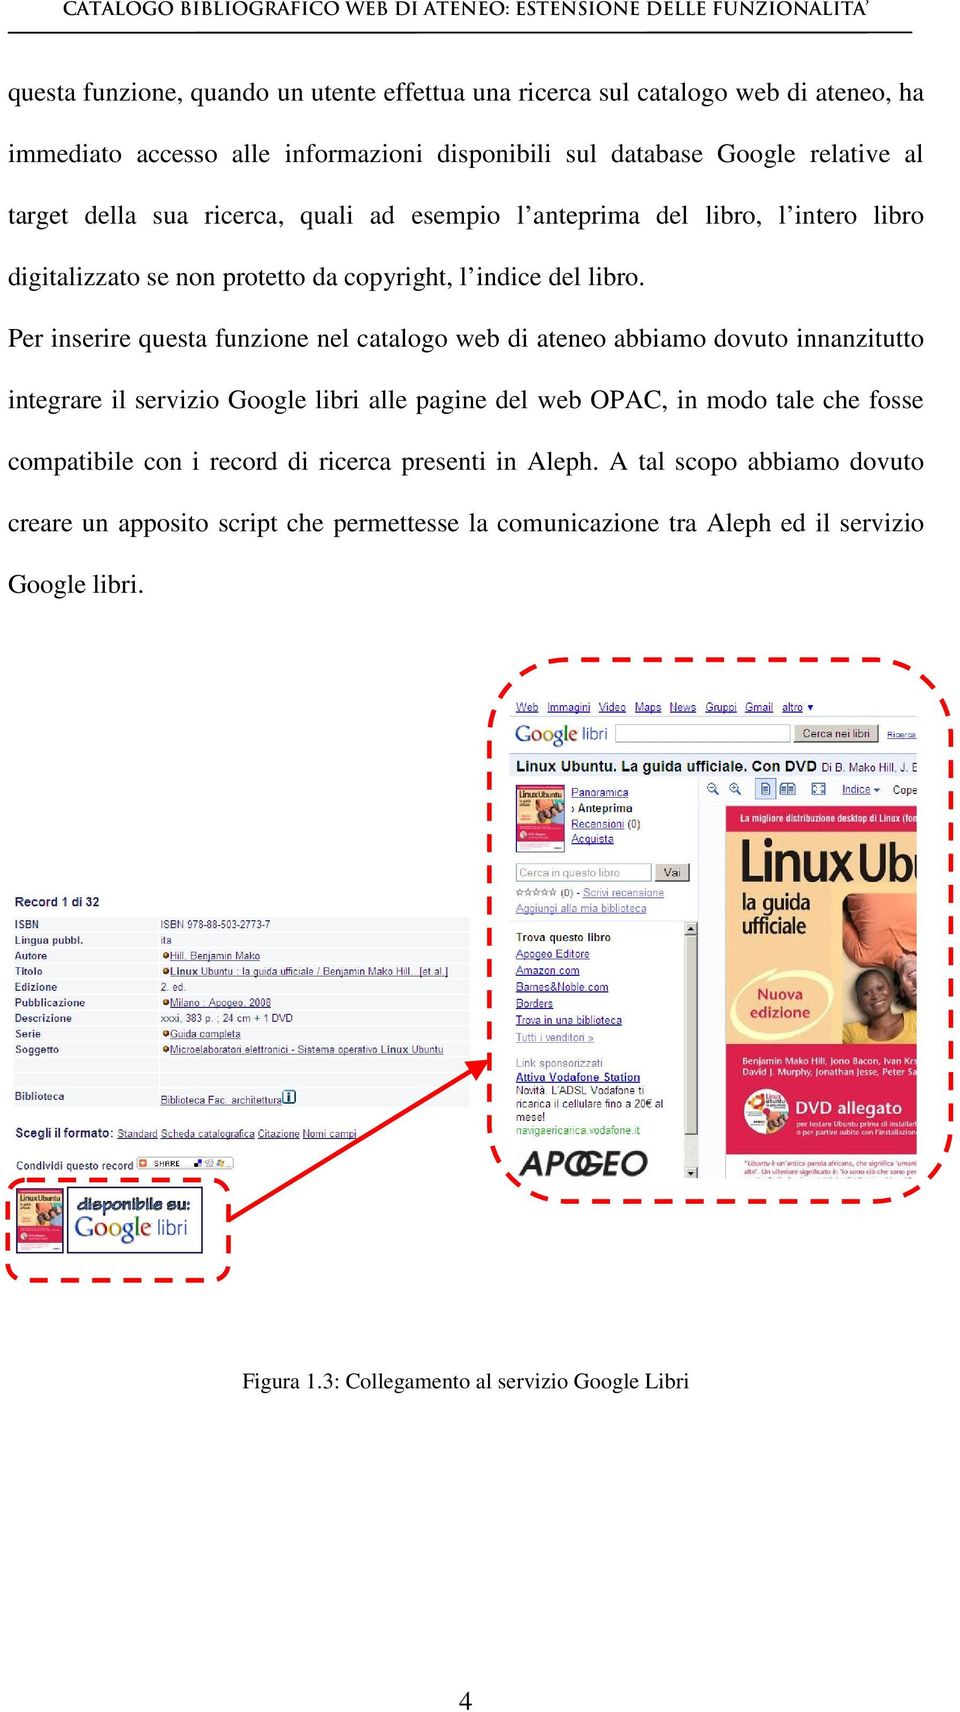 Per inserire questa funzione nel catalogo web di ateneo abbiamo dovuto innanzitutto integrare il servizio Google libri alle pagine del web OPAC, in modo tale che fosse